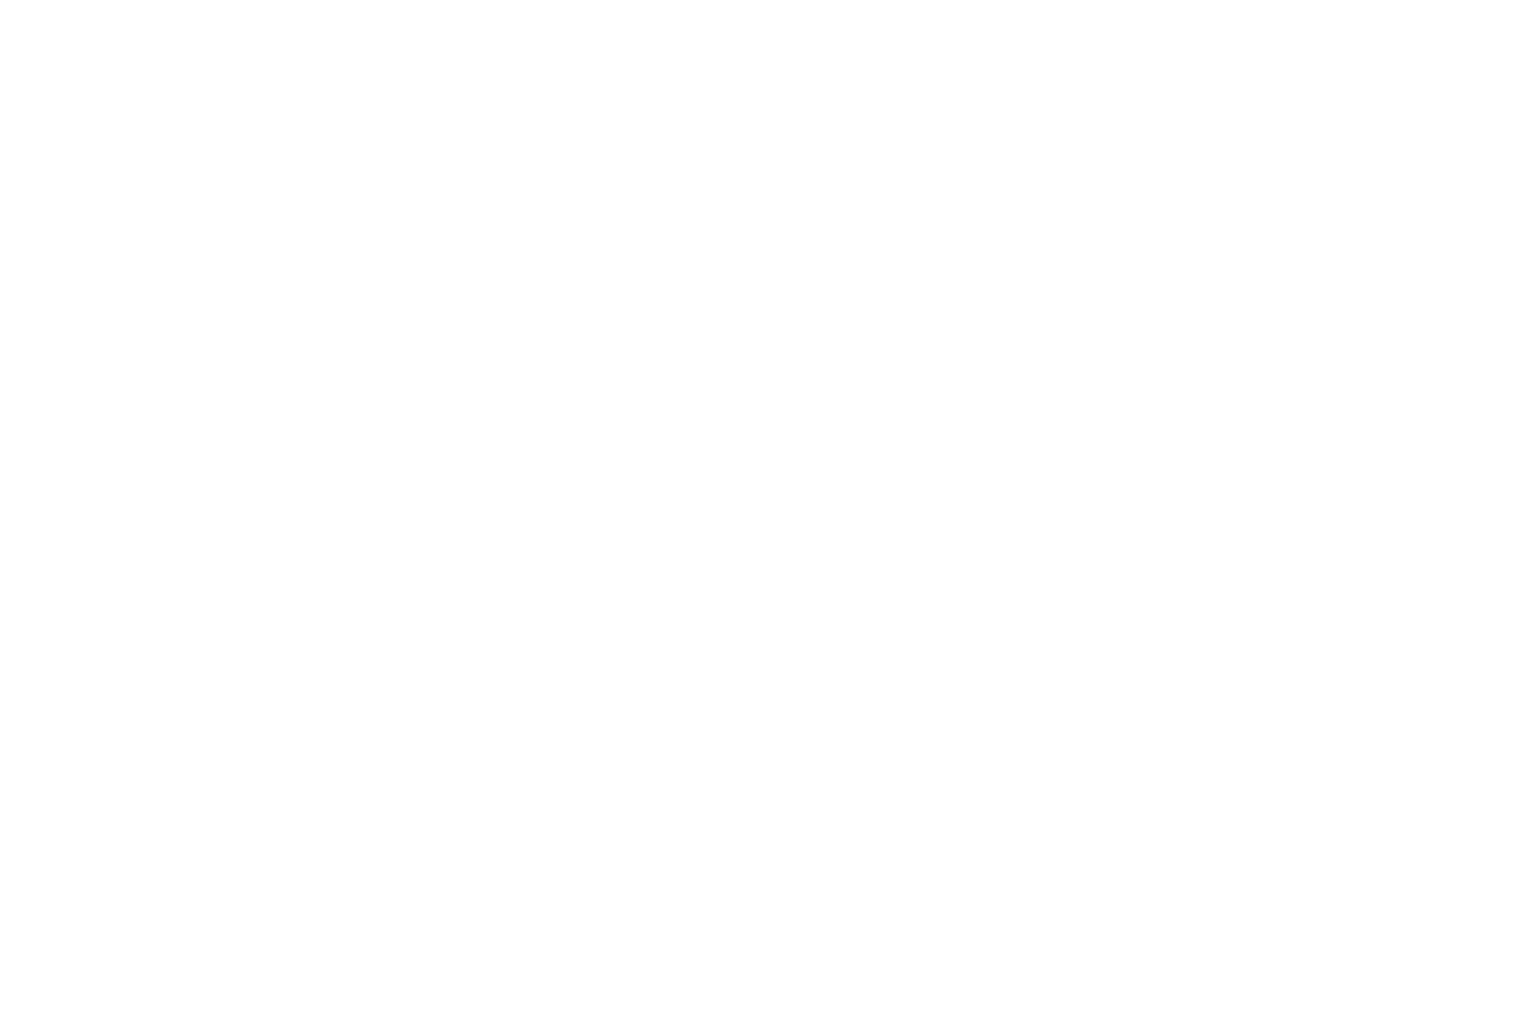 CORTO-DI-SERA-GIOVANNELLO-DA-ITALA-PREMIO-SPECIALE-1536×1020